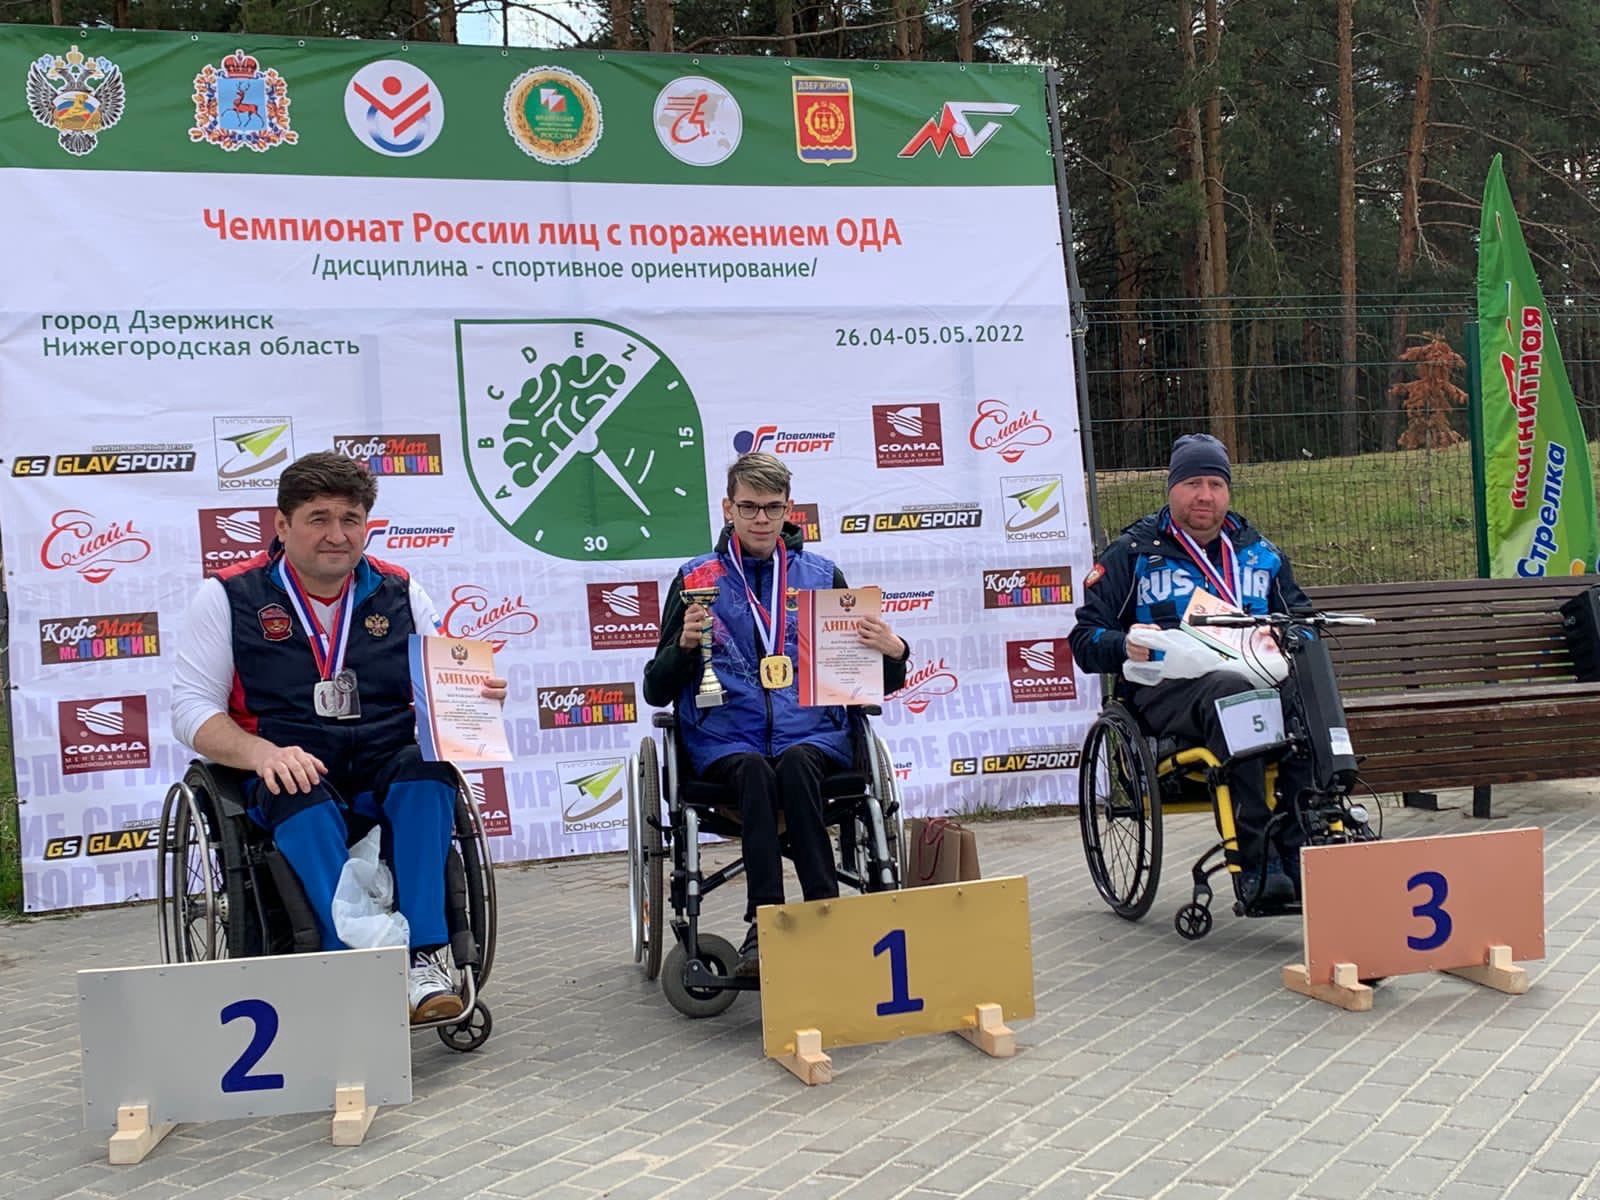 Житель Карелии стал чемпионом России по спортивному ориентированию